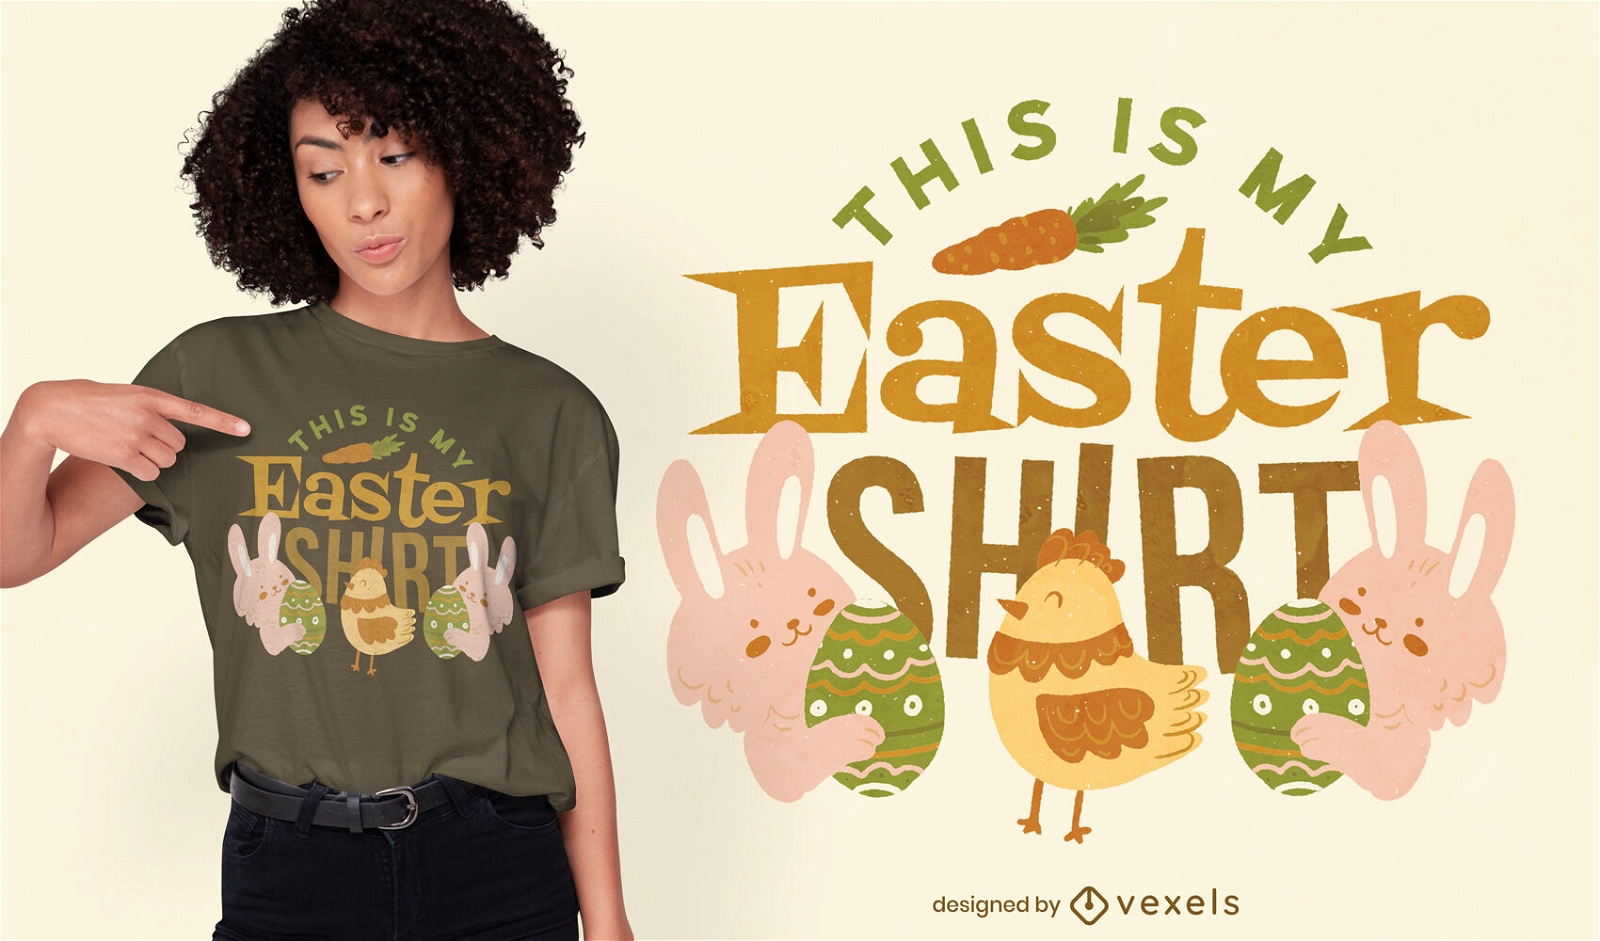 Dise?o de camiseta de Pascua de conejo y pollo.